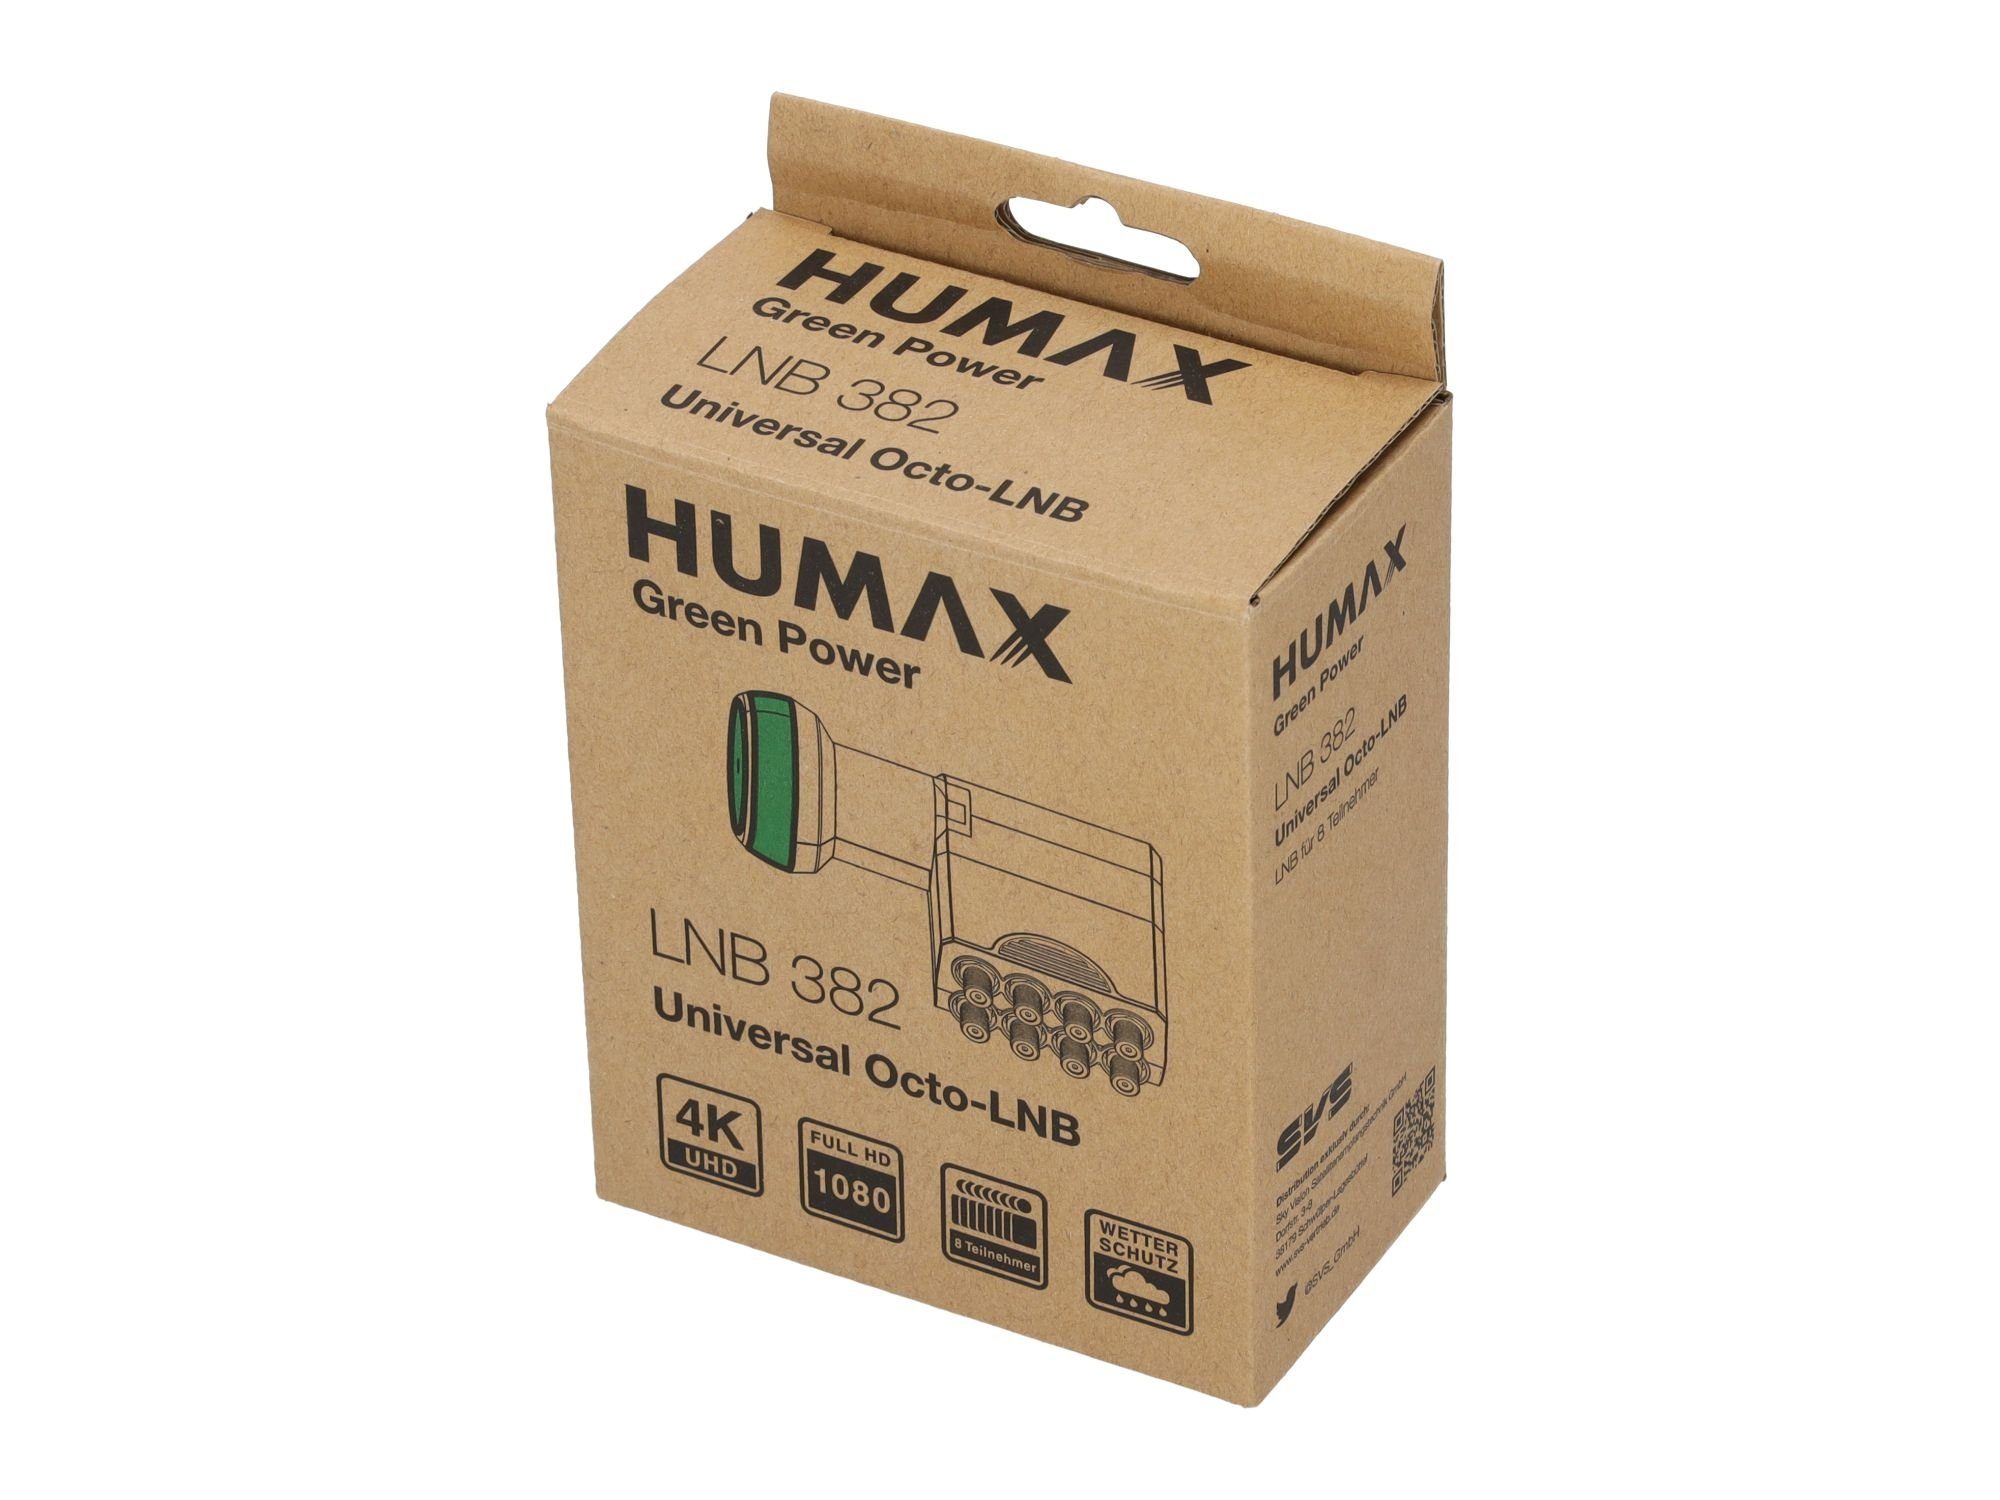 (für Umweltfreundliche Universal-Octo-LNB Octo-LNB Teilnehmer, Power LTE Filter) Green 382, Verpackung, 8 stromsparend Humax